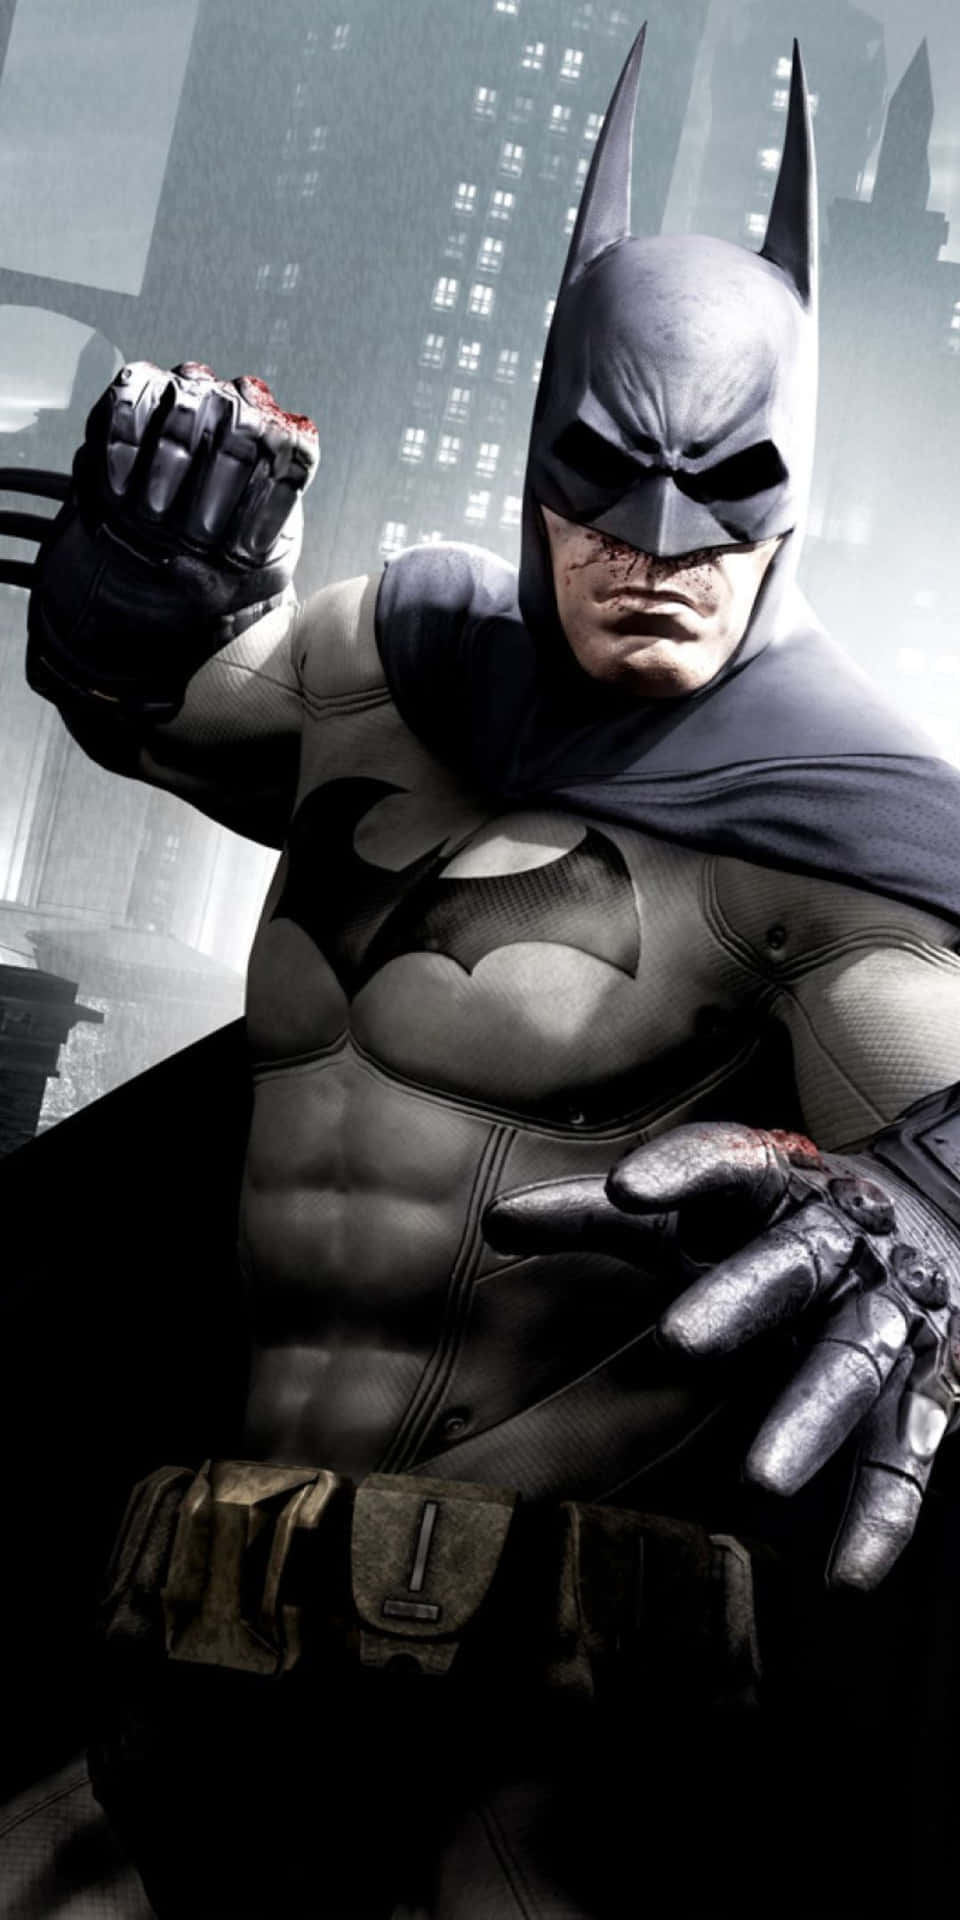 Pixel3 Sfondo Con Batman In Posizione Di Combattimento E Sagoma Di Un Edificio Di Arkham City